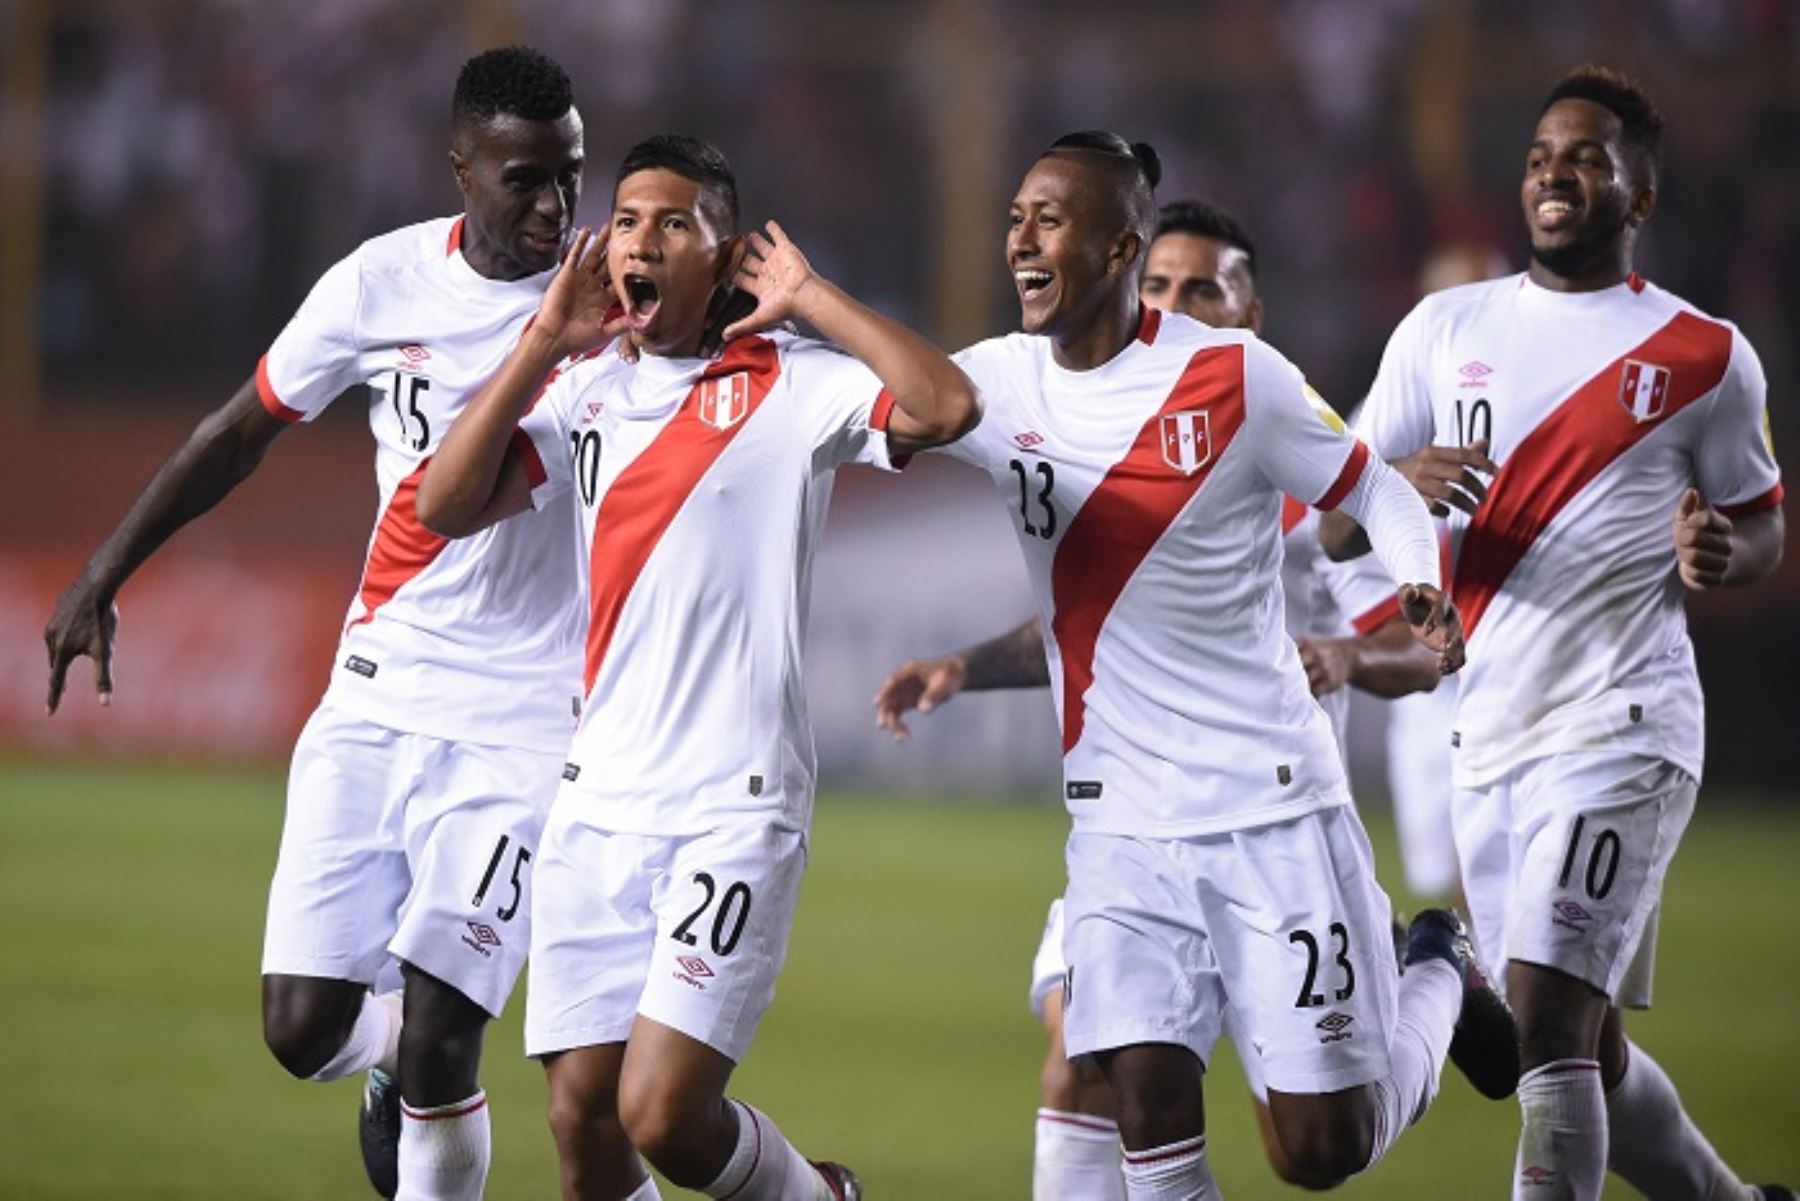 La selección peruana busca darle una alegría a la hinchada peruana que celebra el primer año de la clasificación al Mundial de Rusia 2018